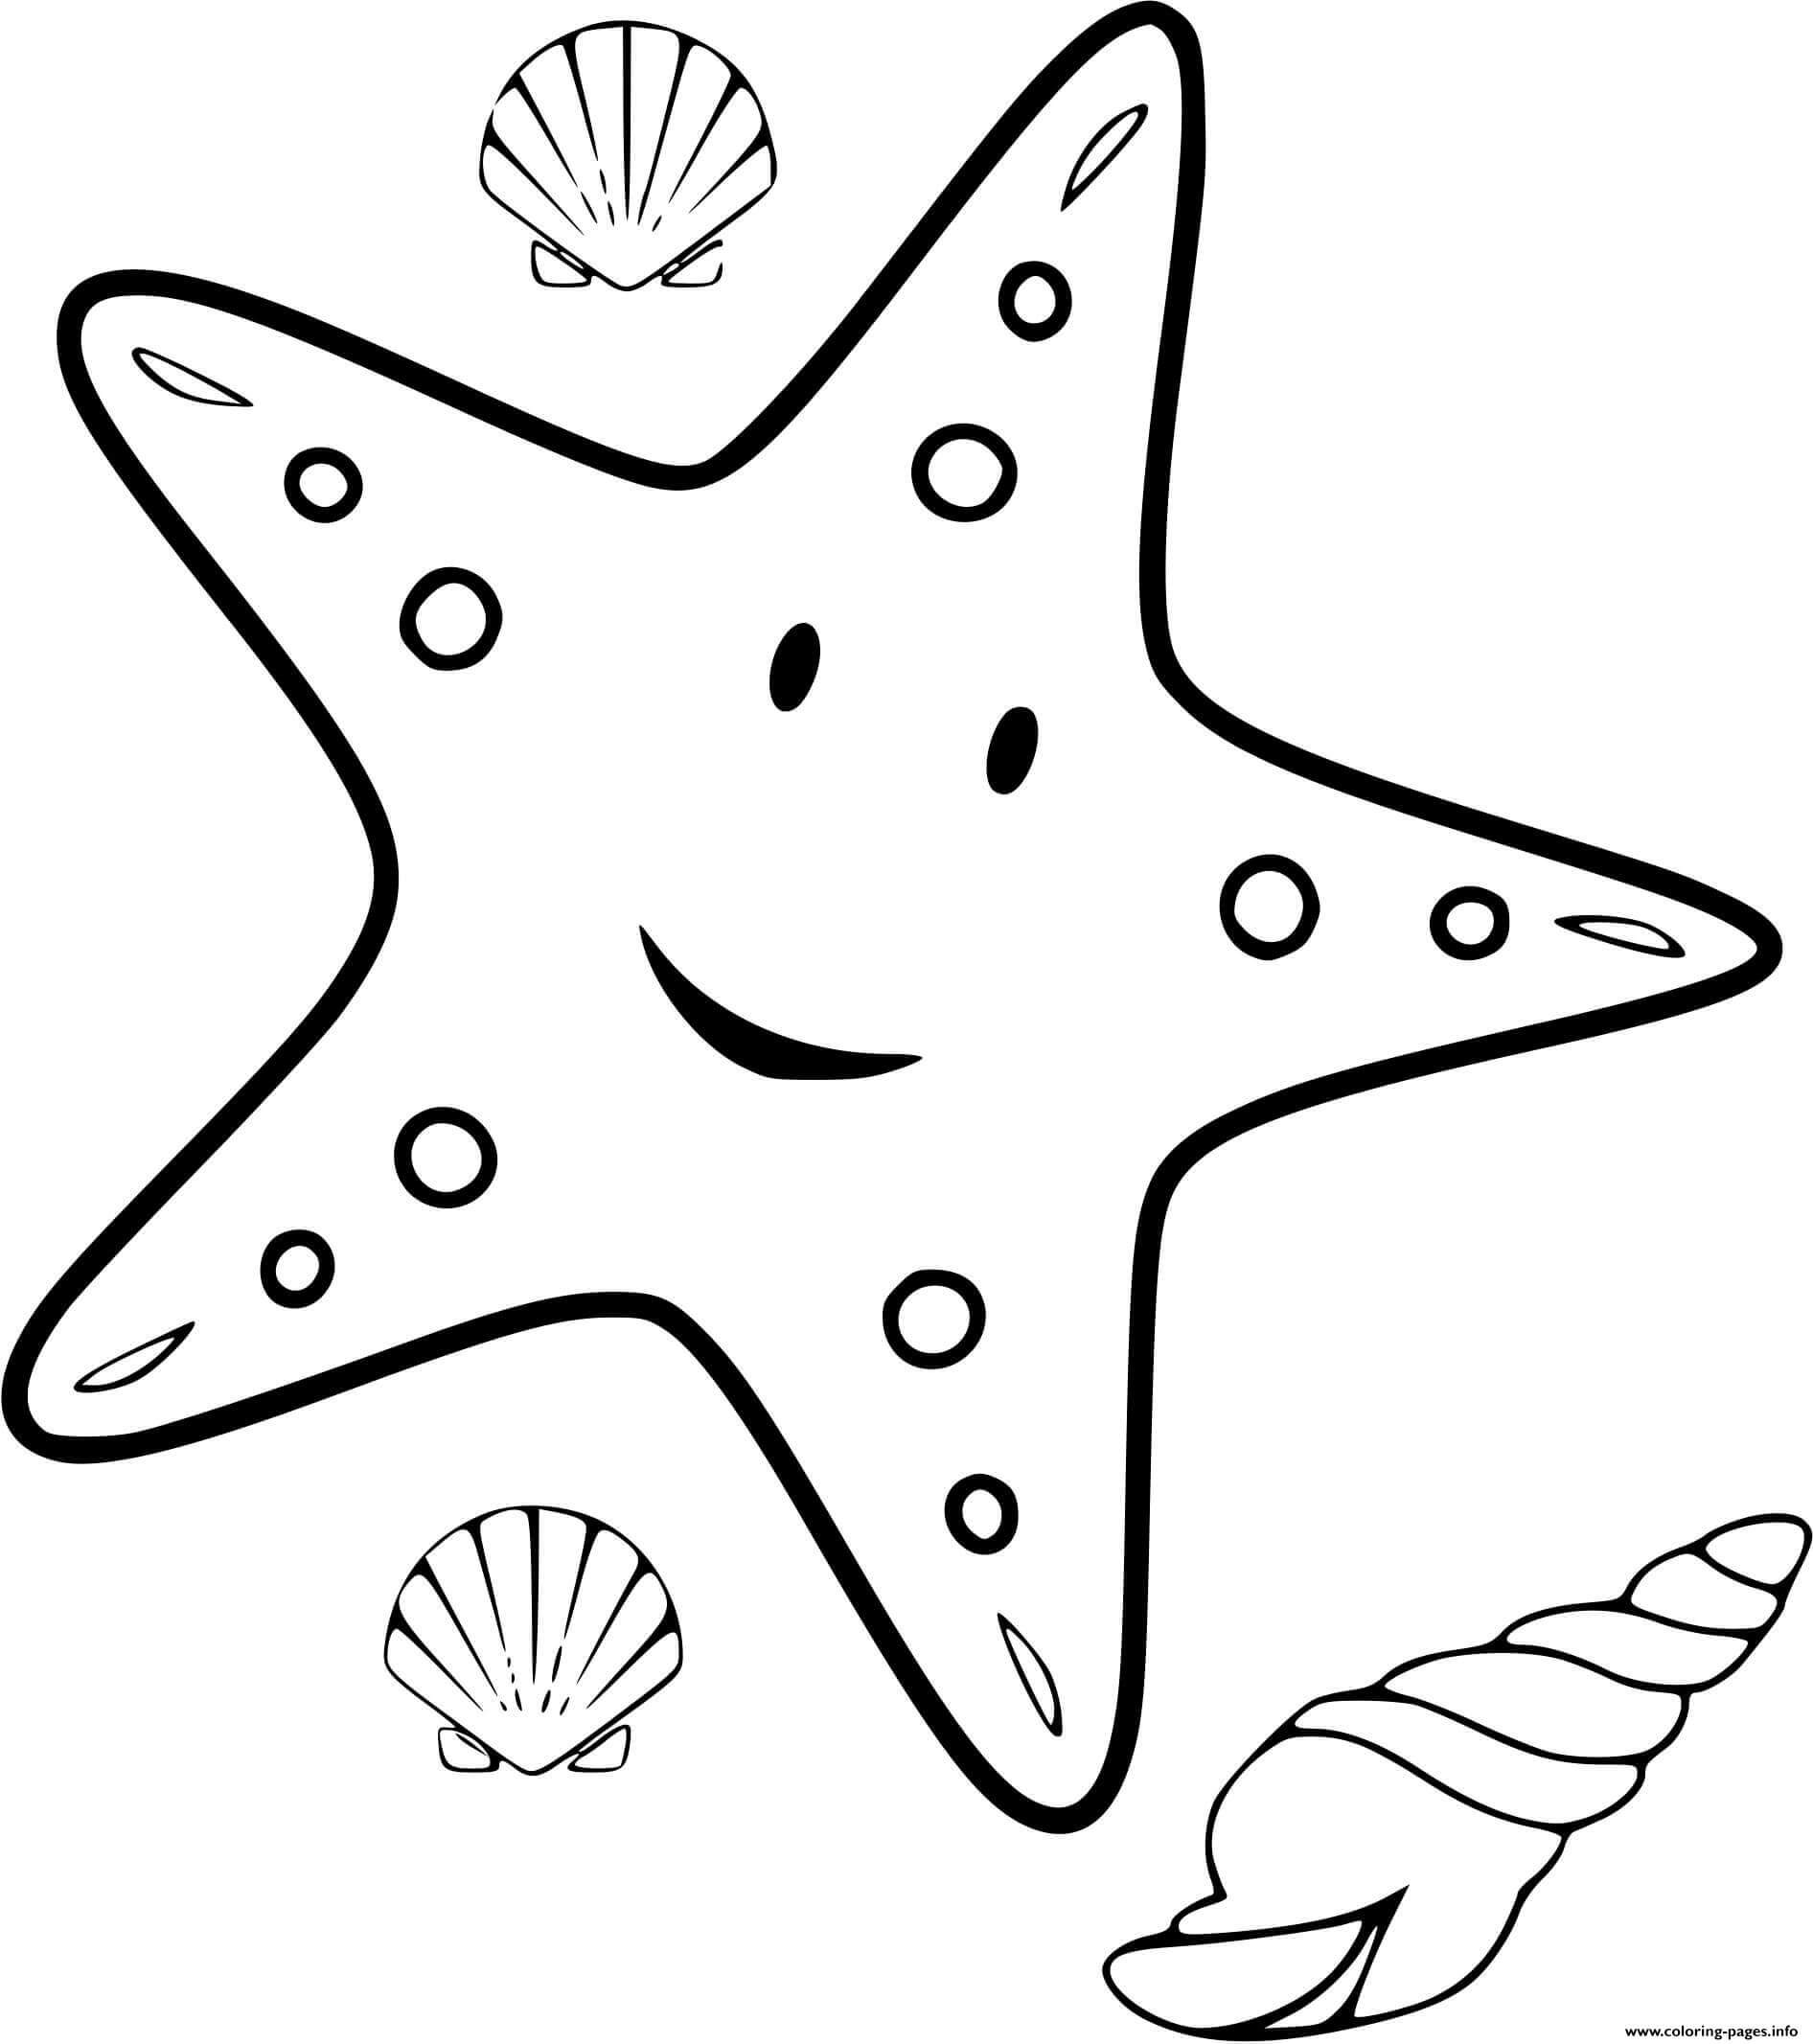 Desenhos de Estrela do Mar e Concha para colorir